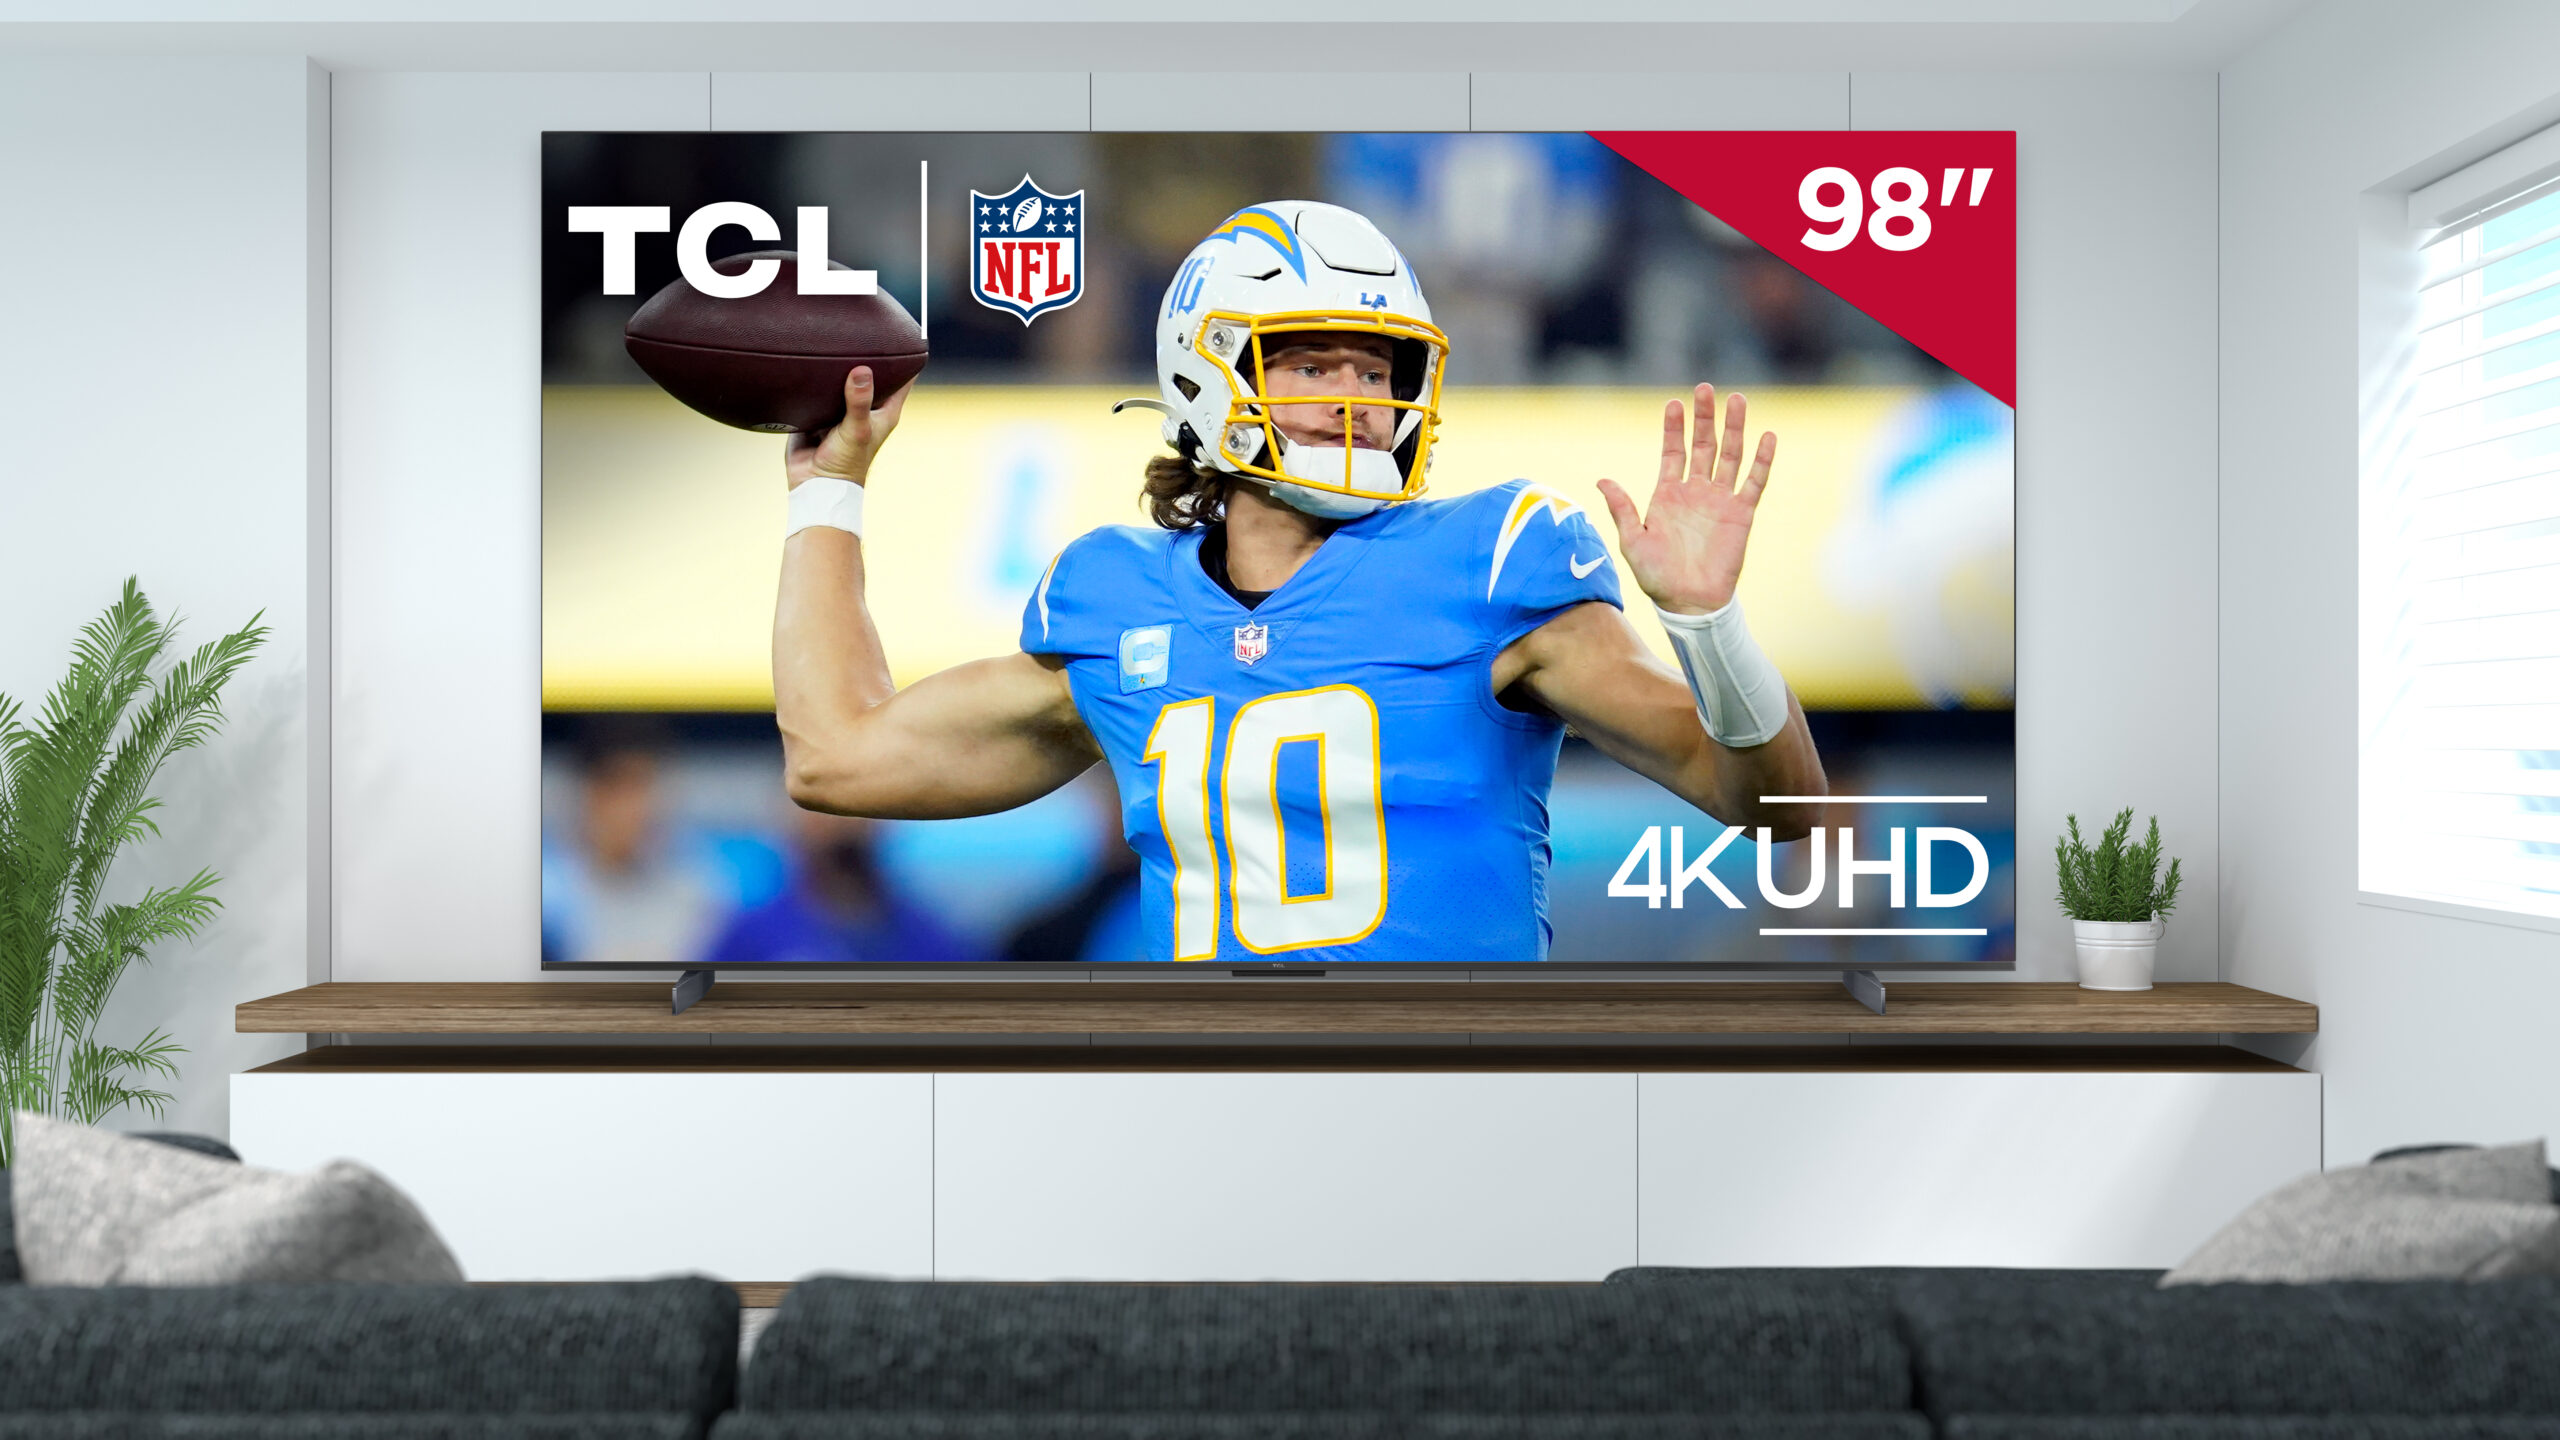 A nova TV S5 de 98 polegadas da TCL está disponível com uma oferta NFL Sunday Ticket